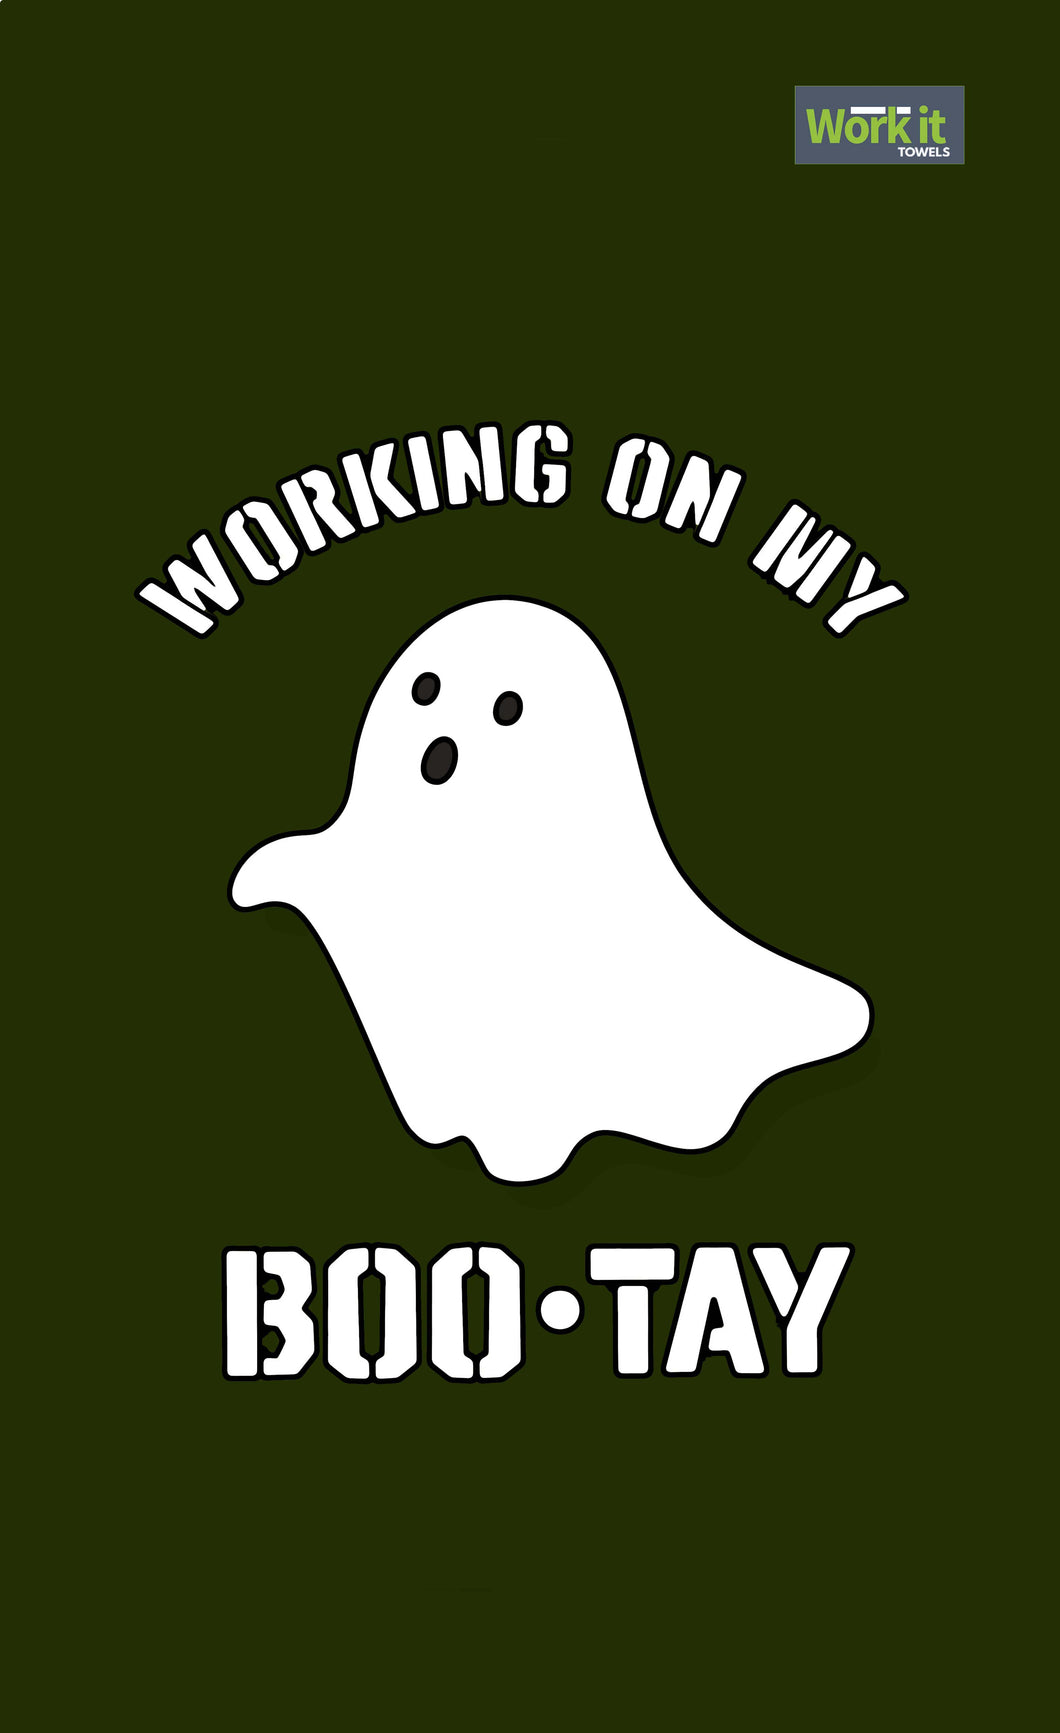 Boo-Tay Work